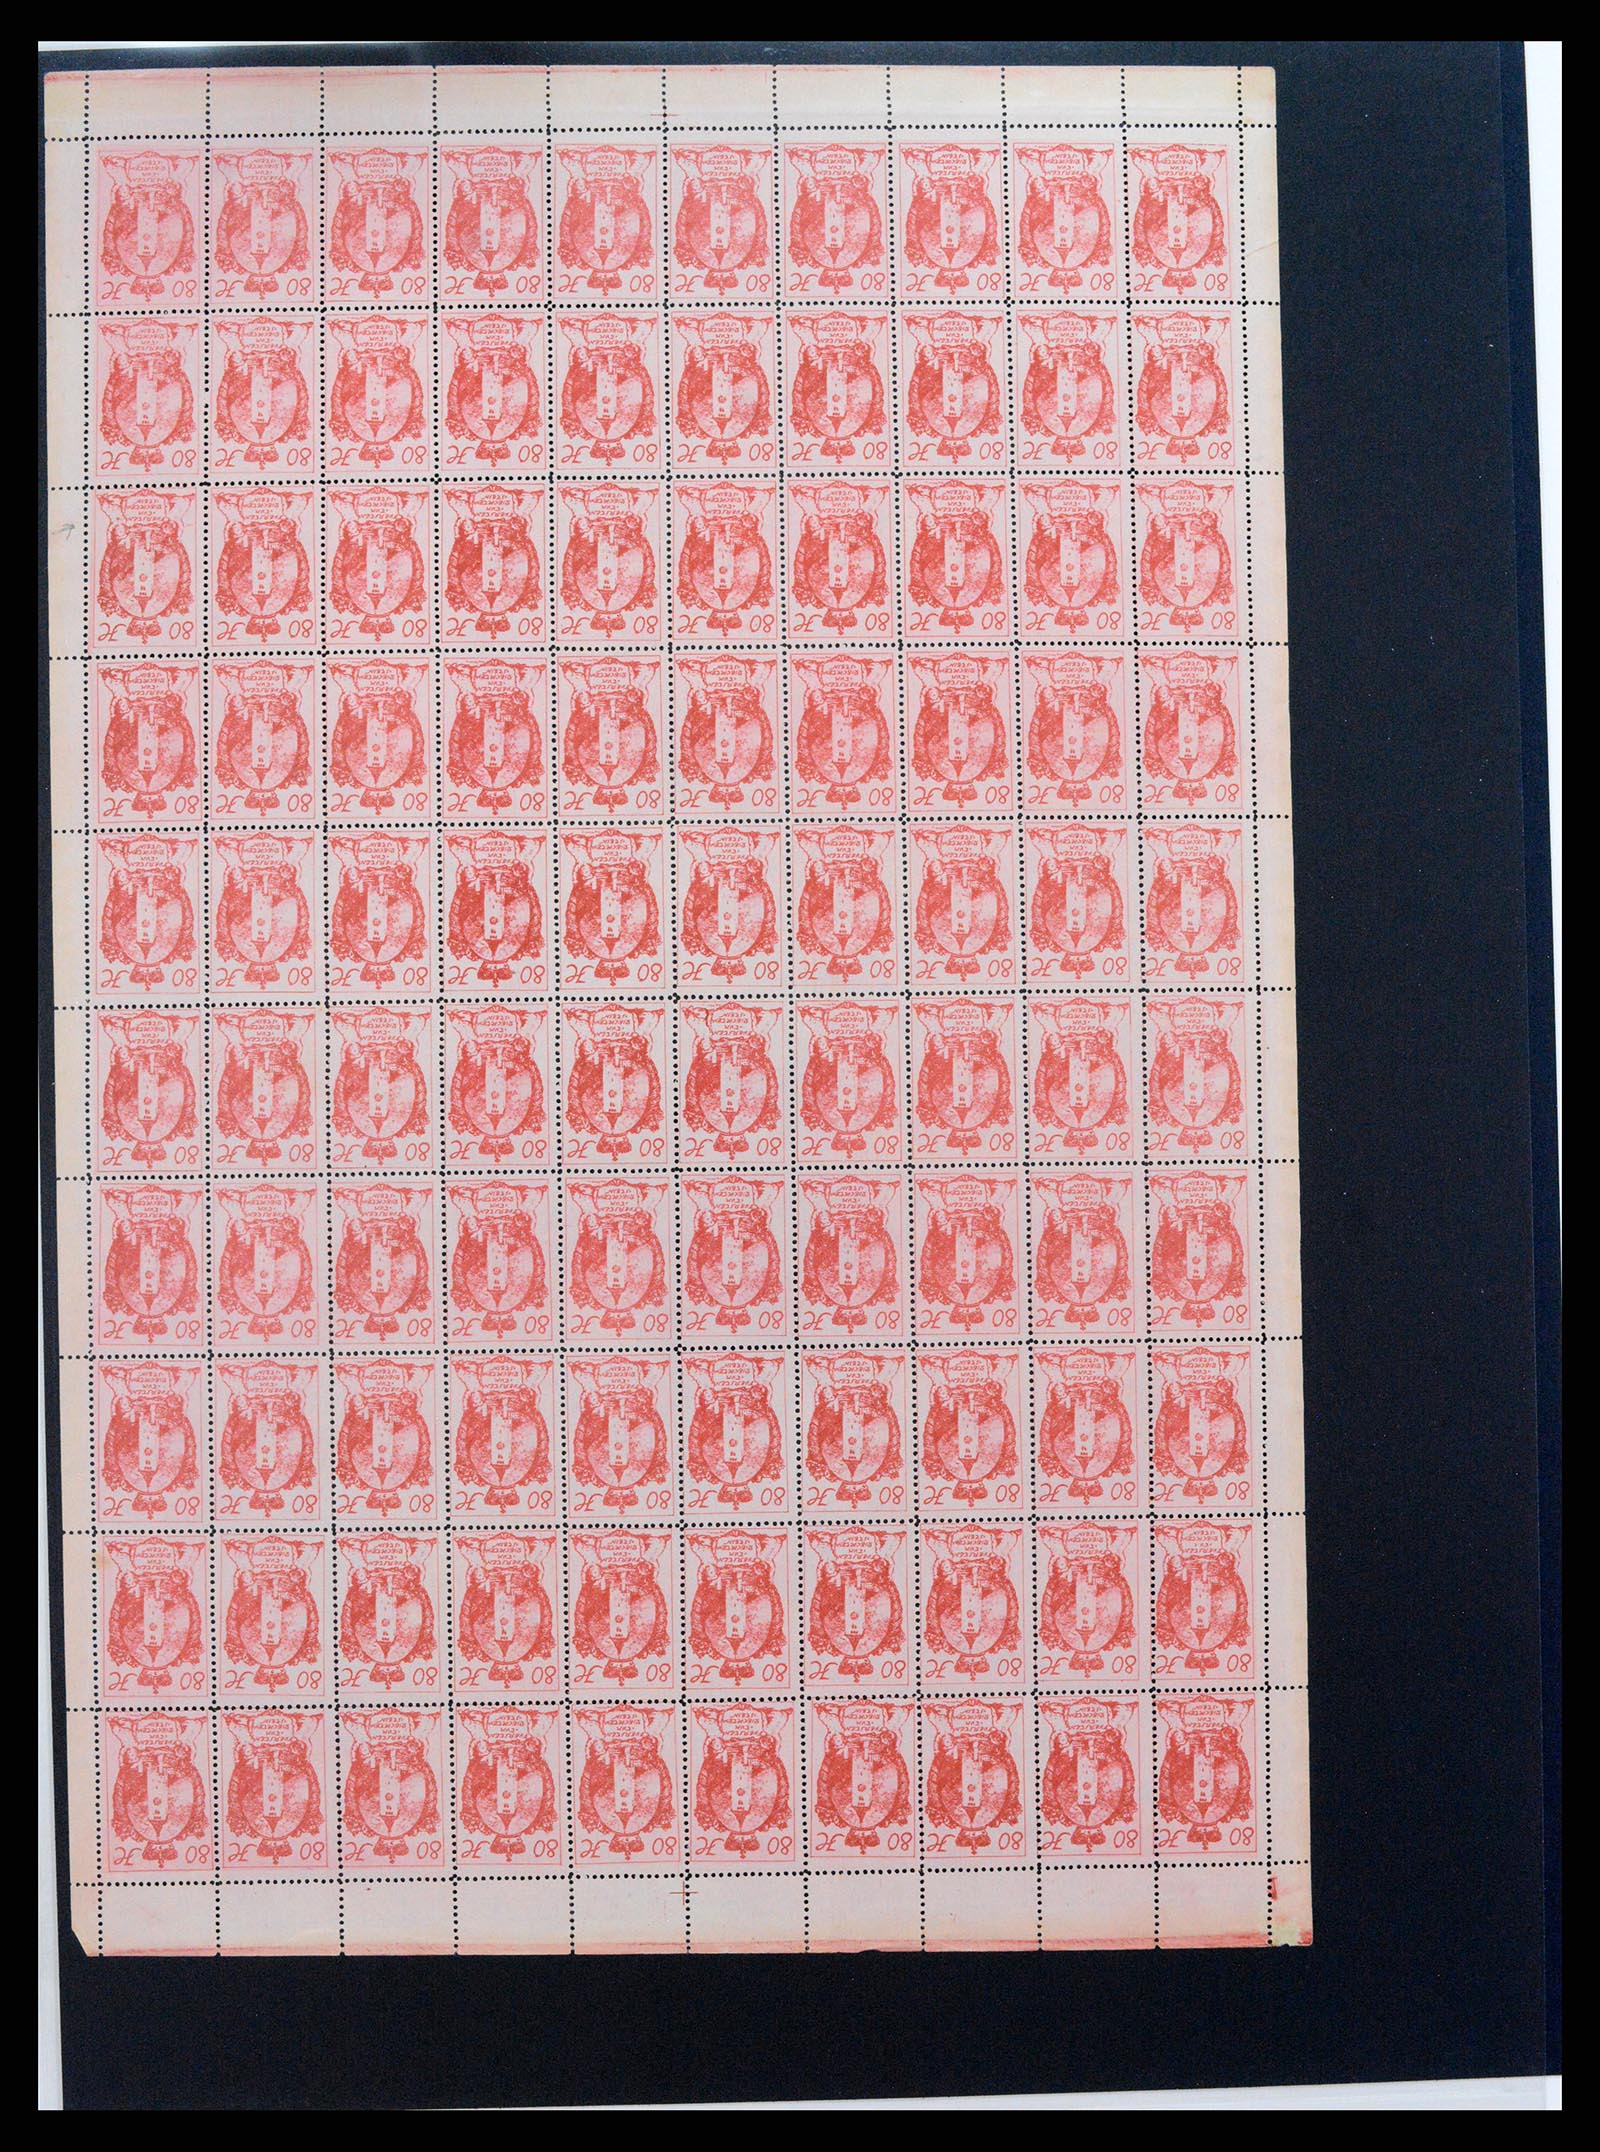 37150 1662 - Stamp collection 37150 Liechtenstein supercollection 1912-1962.